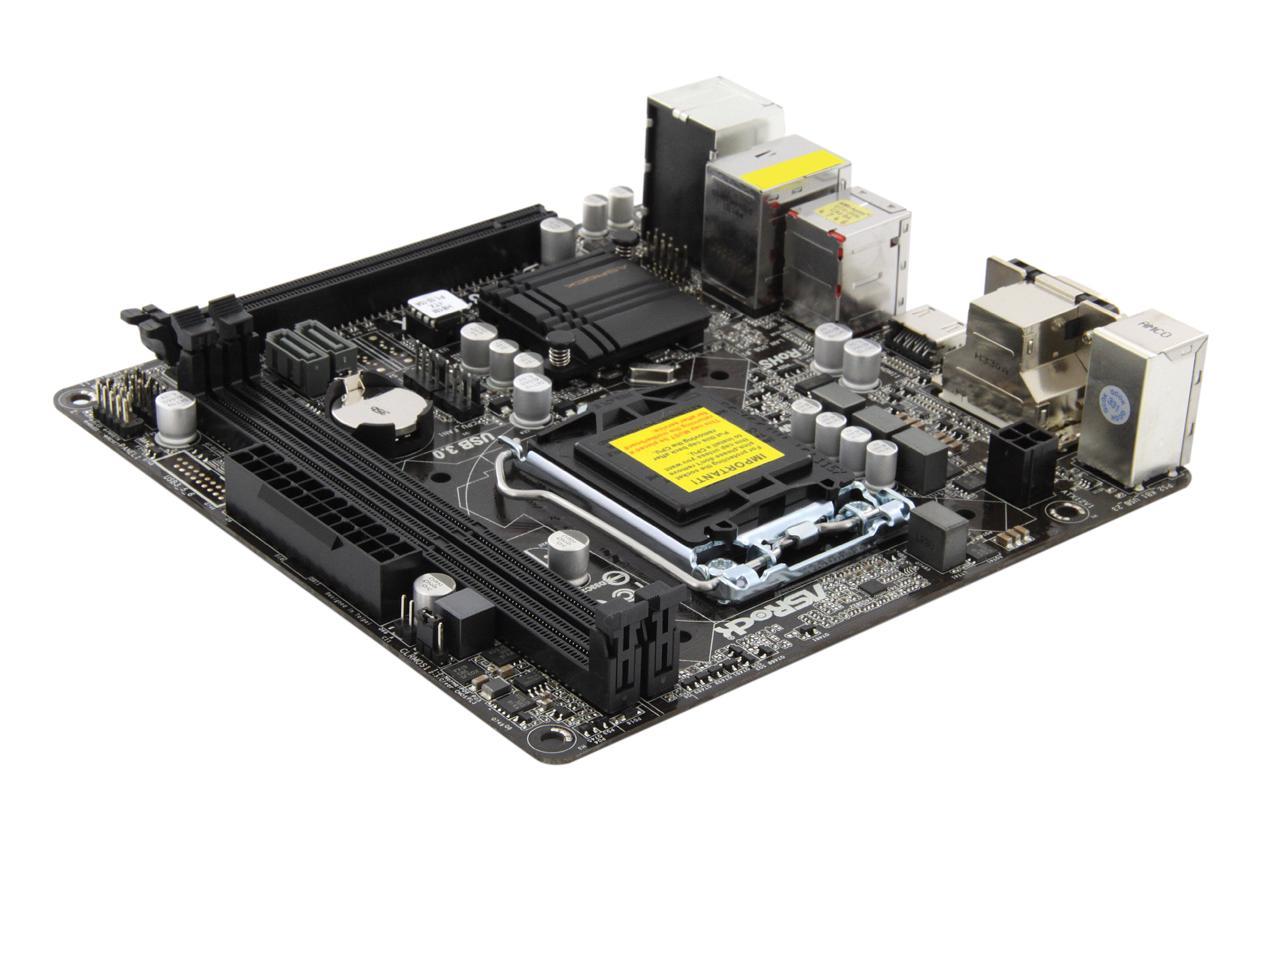 ASRock H81M-ITX LGA 1150 Intel H81 HDMI SATA 6Gb/s USB 3.0 Mini ITX Intel  Motherboard